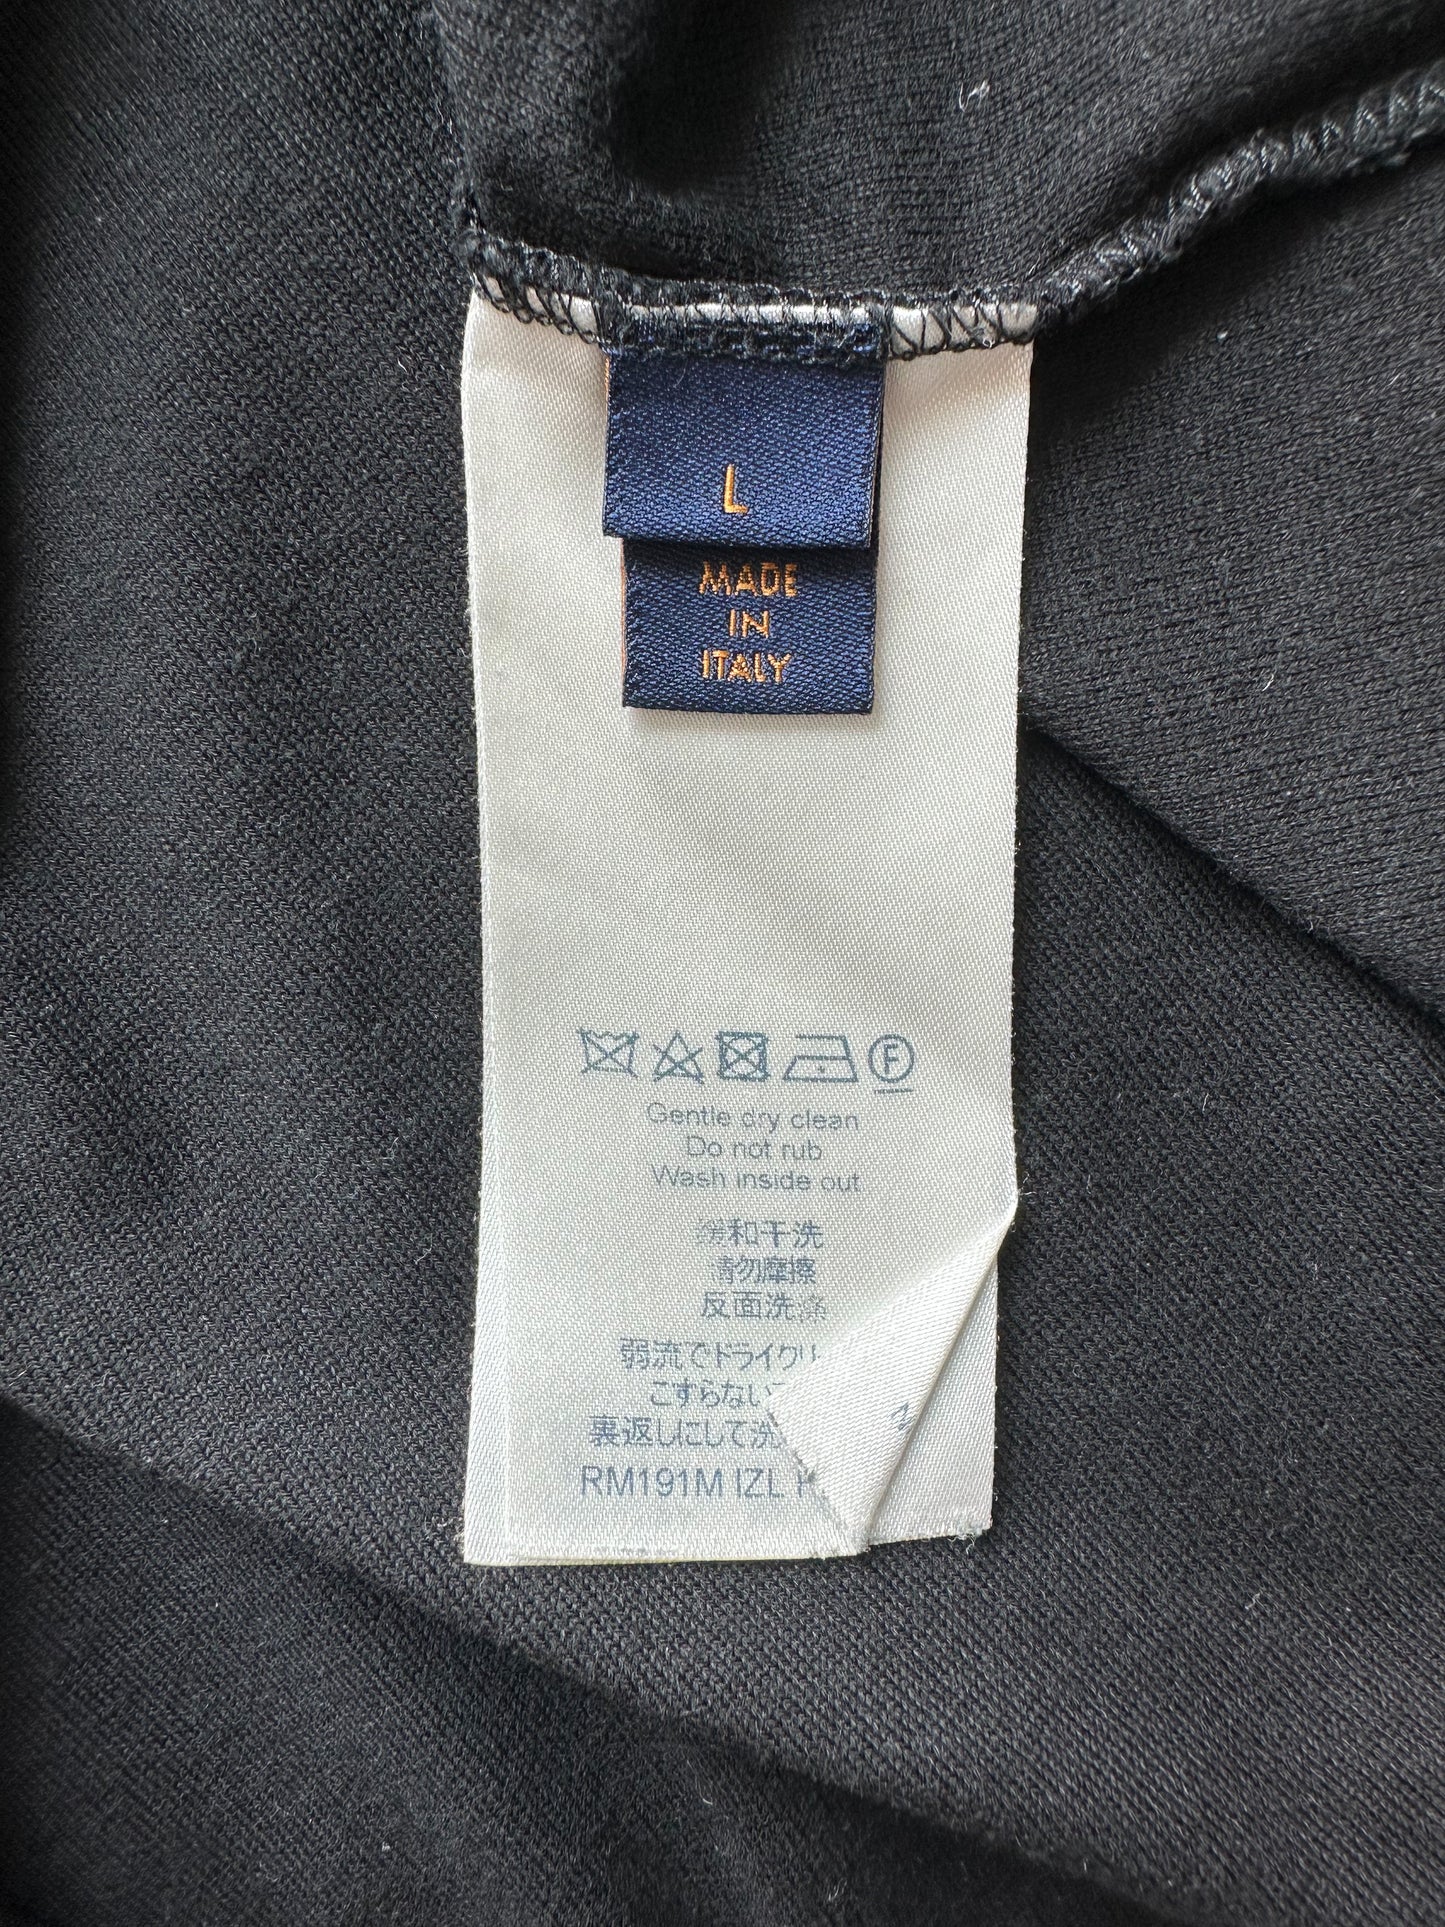 Louis Vuitton Black Space Applique Logo T-Shirt – Savonches